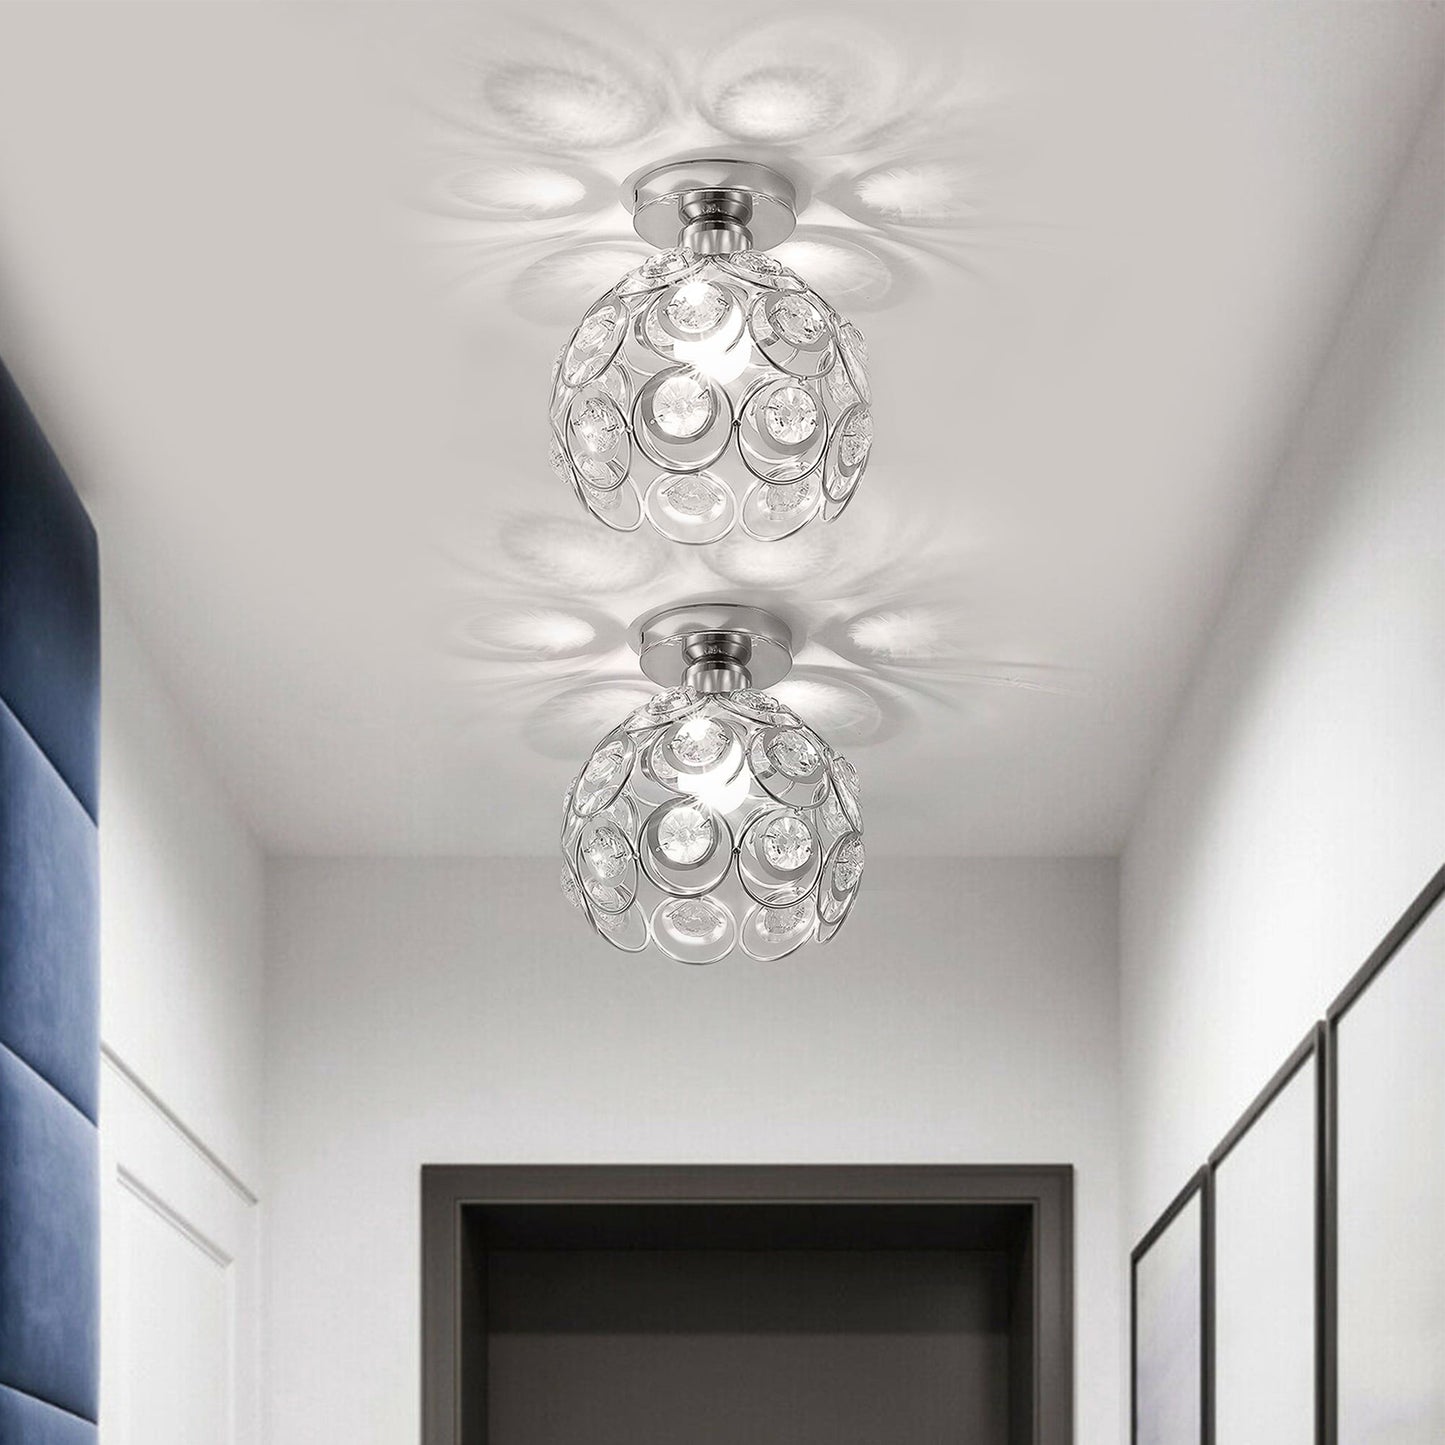 1-Light Silver Romantic Flush Mount LED Ceiling Light Fixture,Modern Crystal Chandelier Lighting, Celling Lamp for Bedroom,Bar,,Bathroom, Living Room